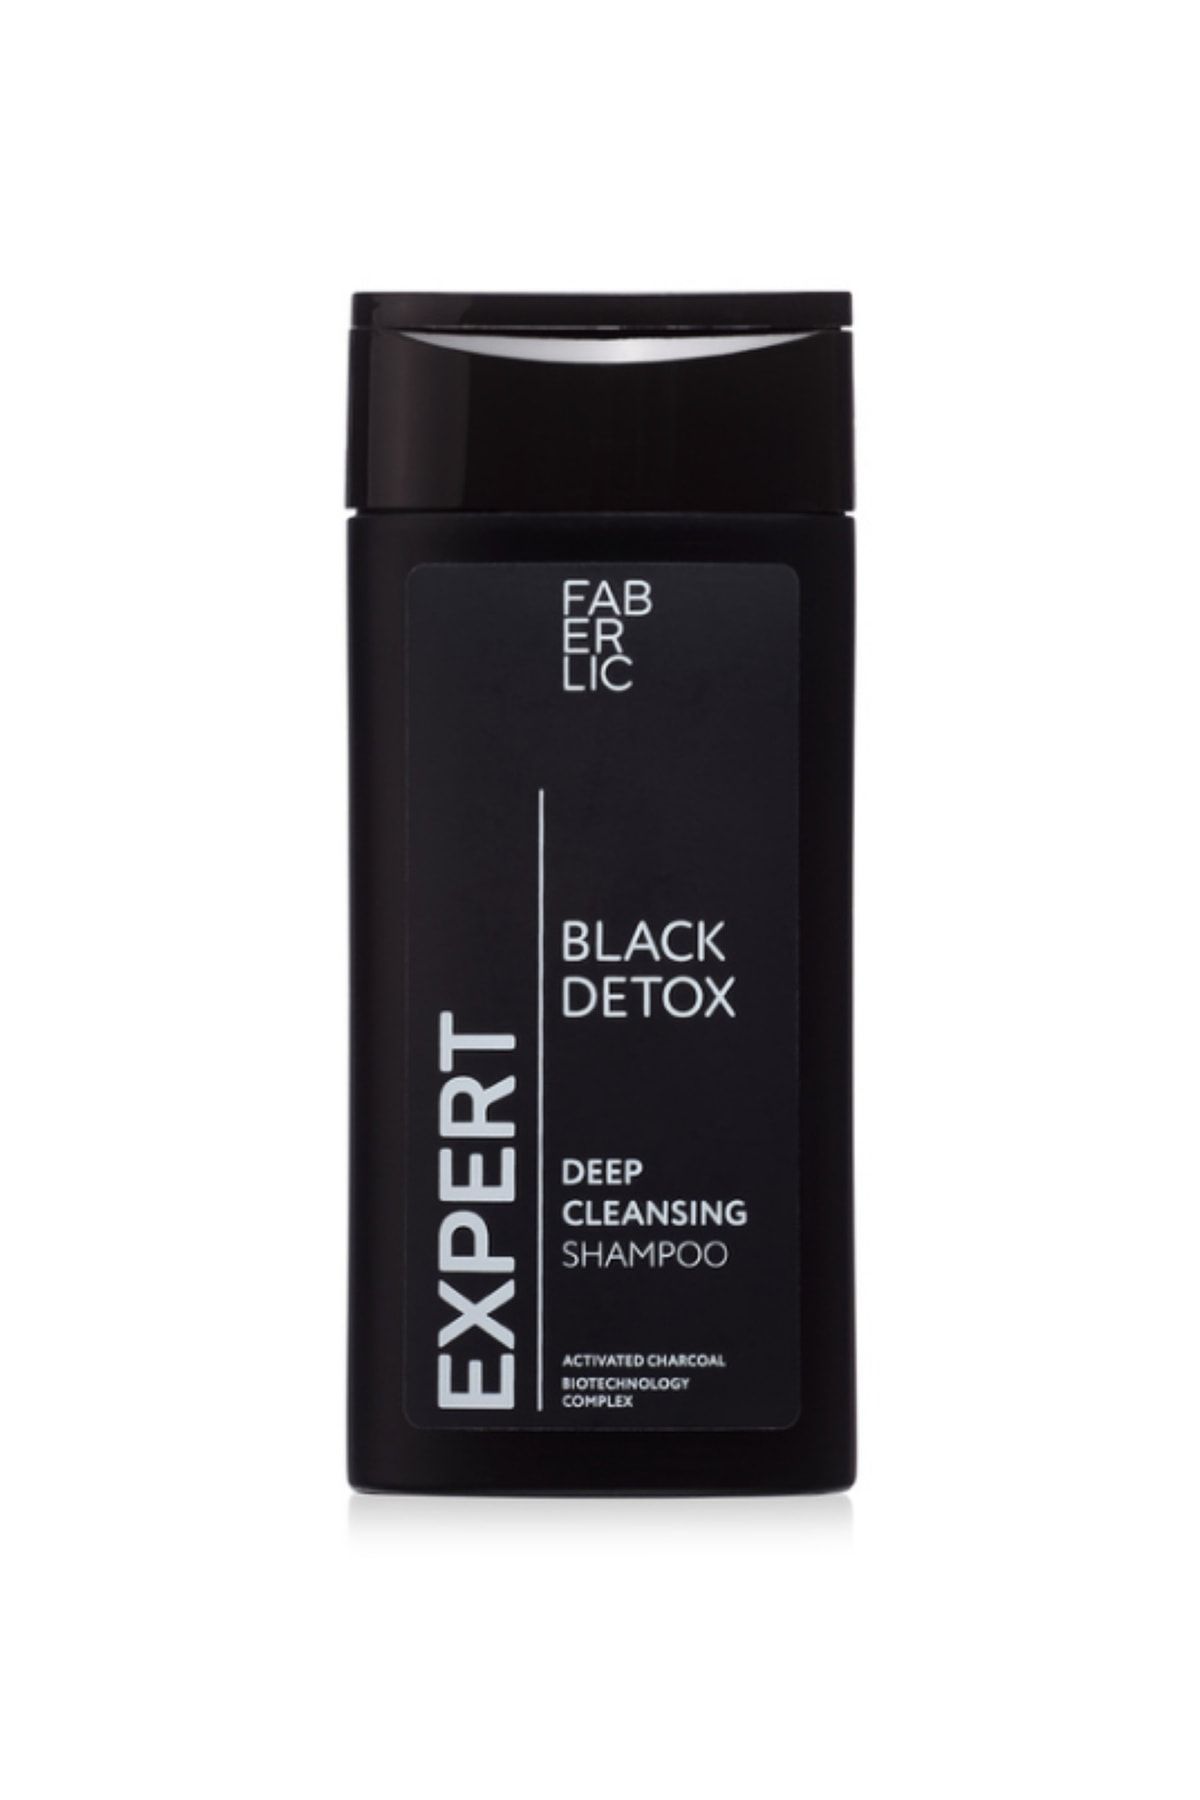 Faberlic Expert Serisi Tüm Saç Tipleri Için Arındırıcı Şampuan Black Detox